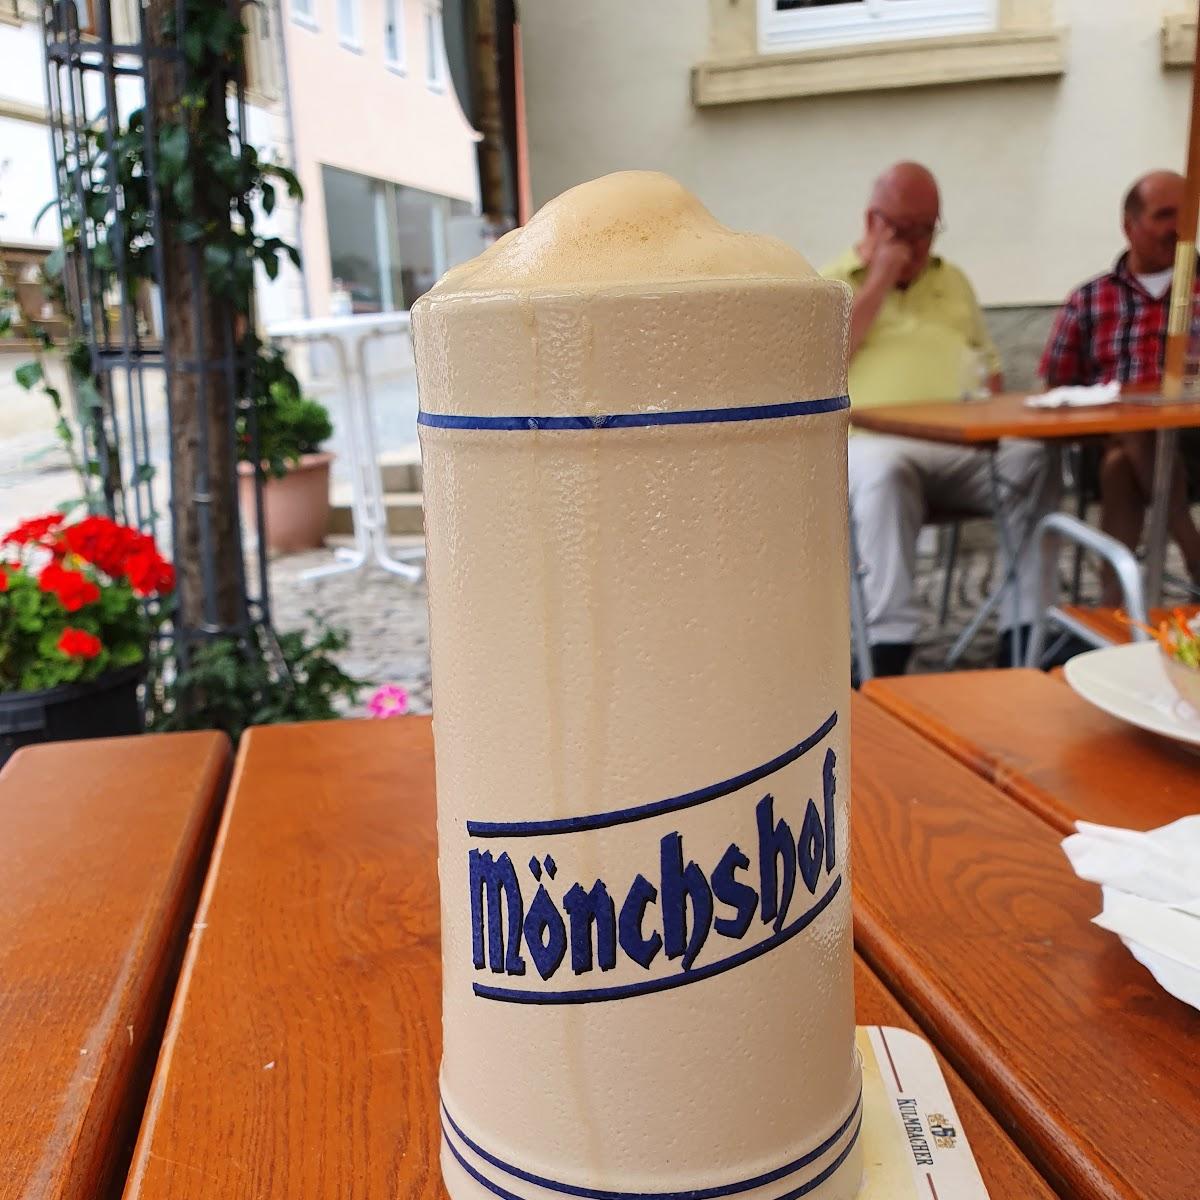 Restaurant "Gasthof Zum Hirschen" in Dettelbach